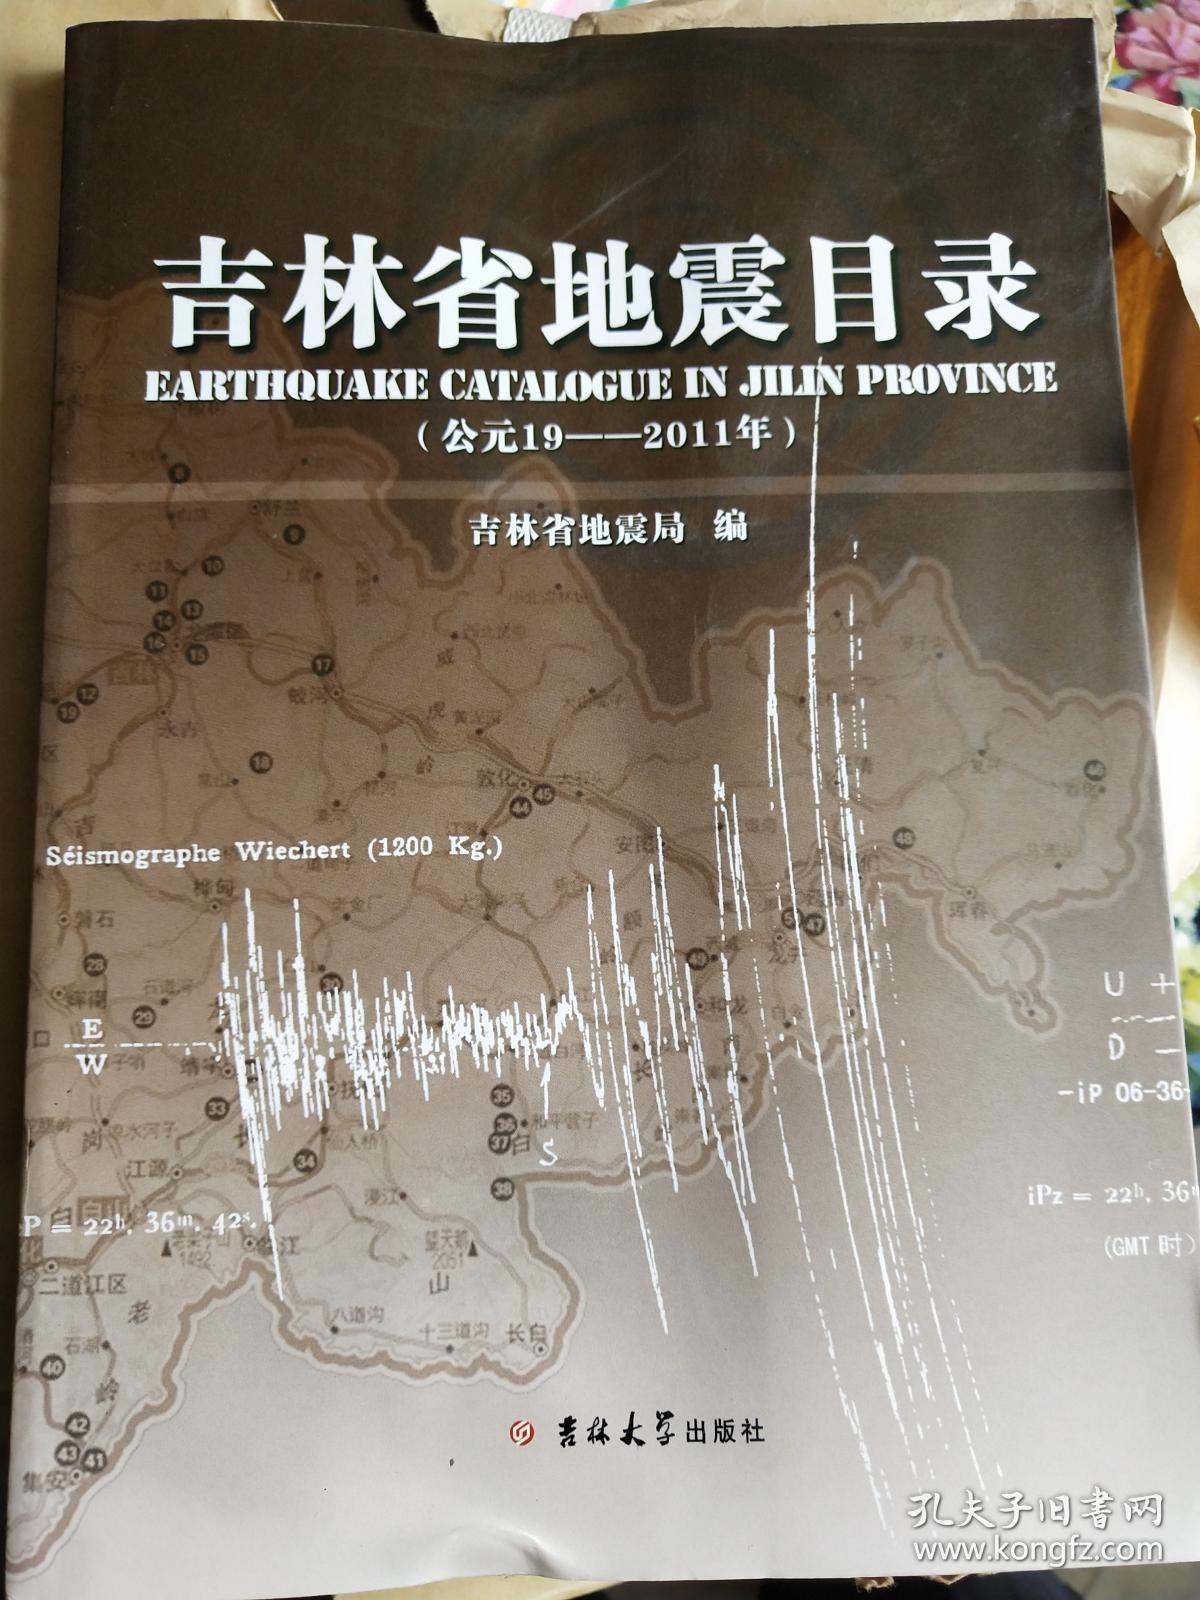 吉林省地震目录